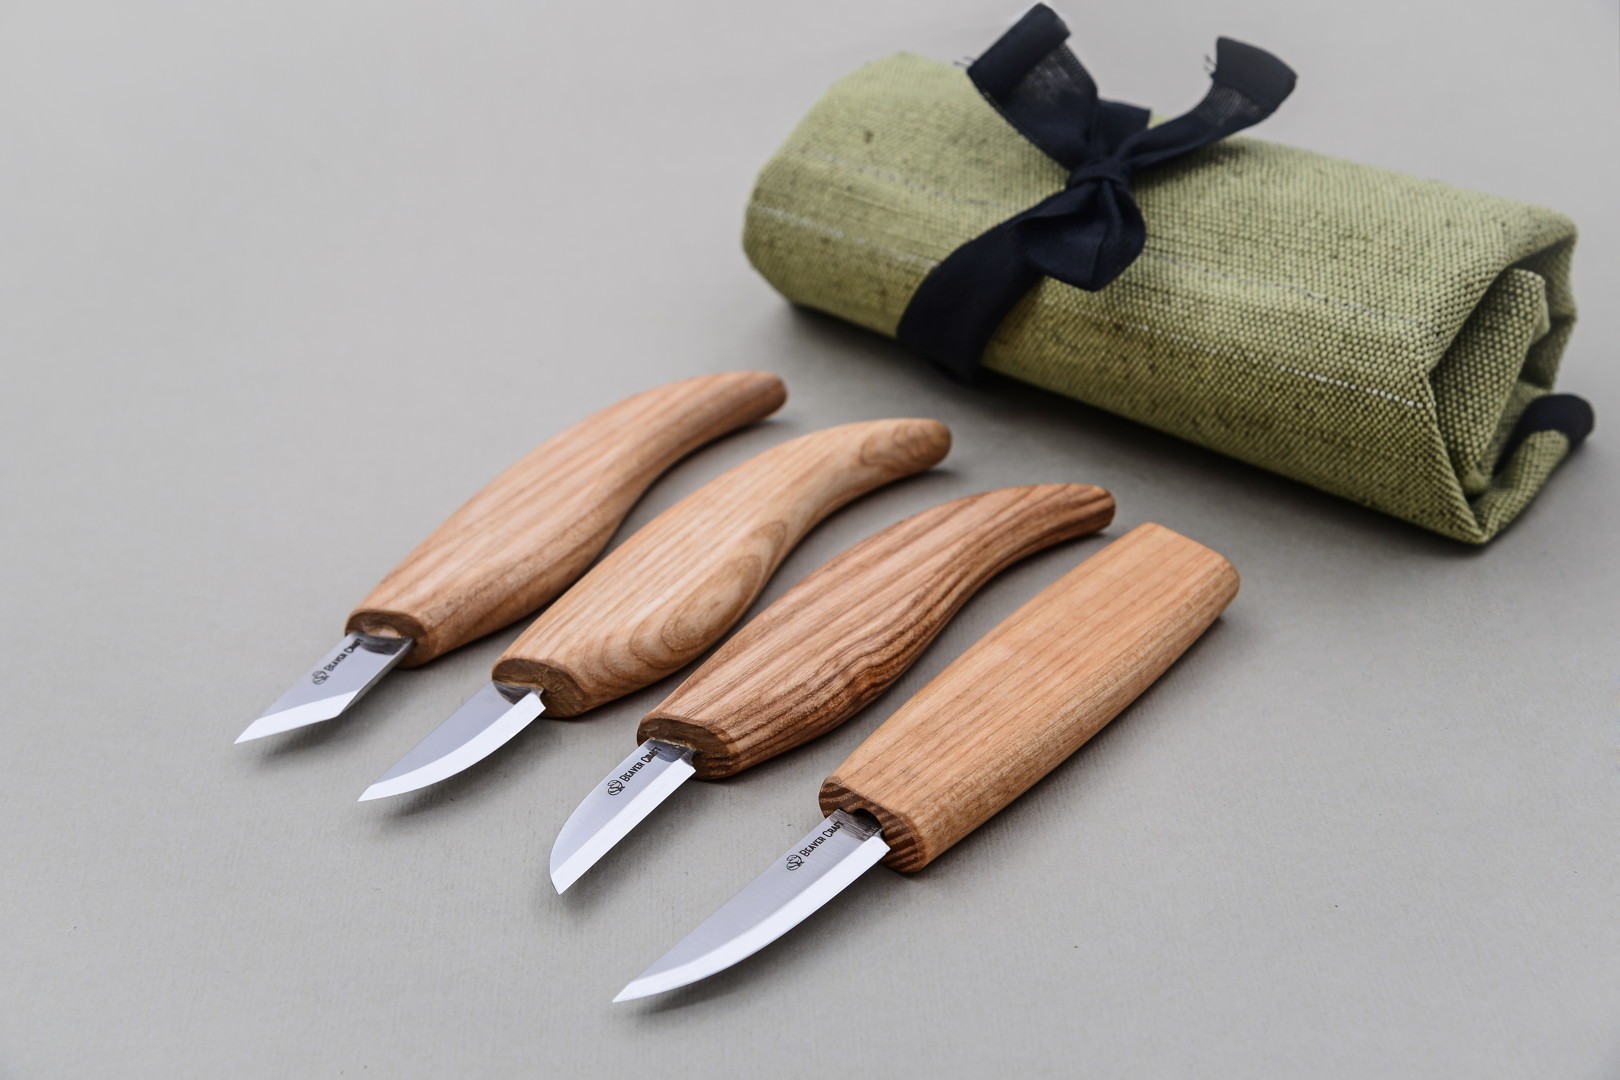 Set de 4 couteaux avec trousse de rangement - Maison Du Tournage